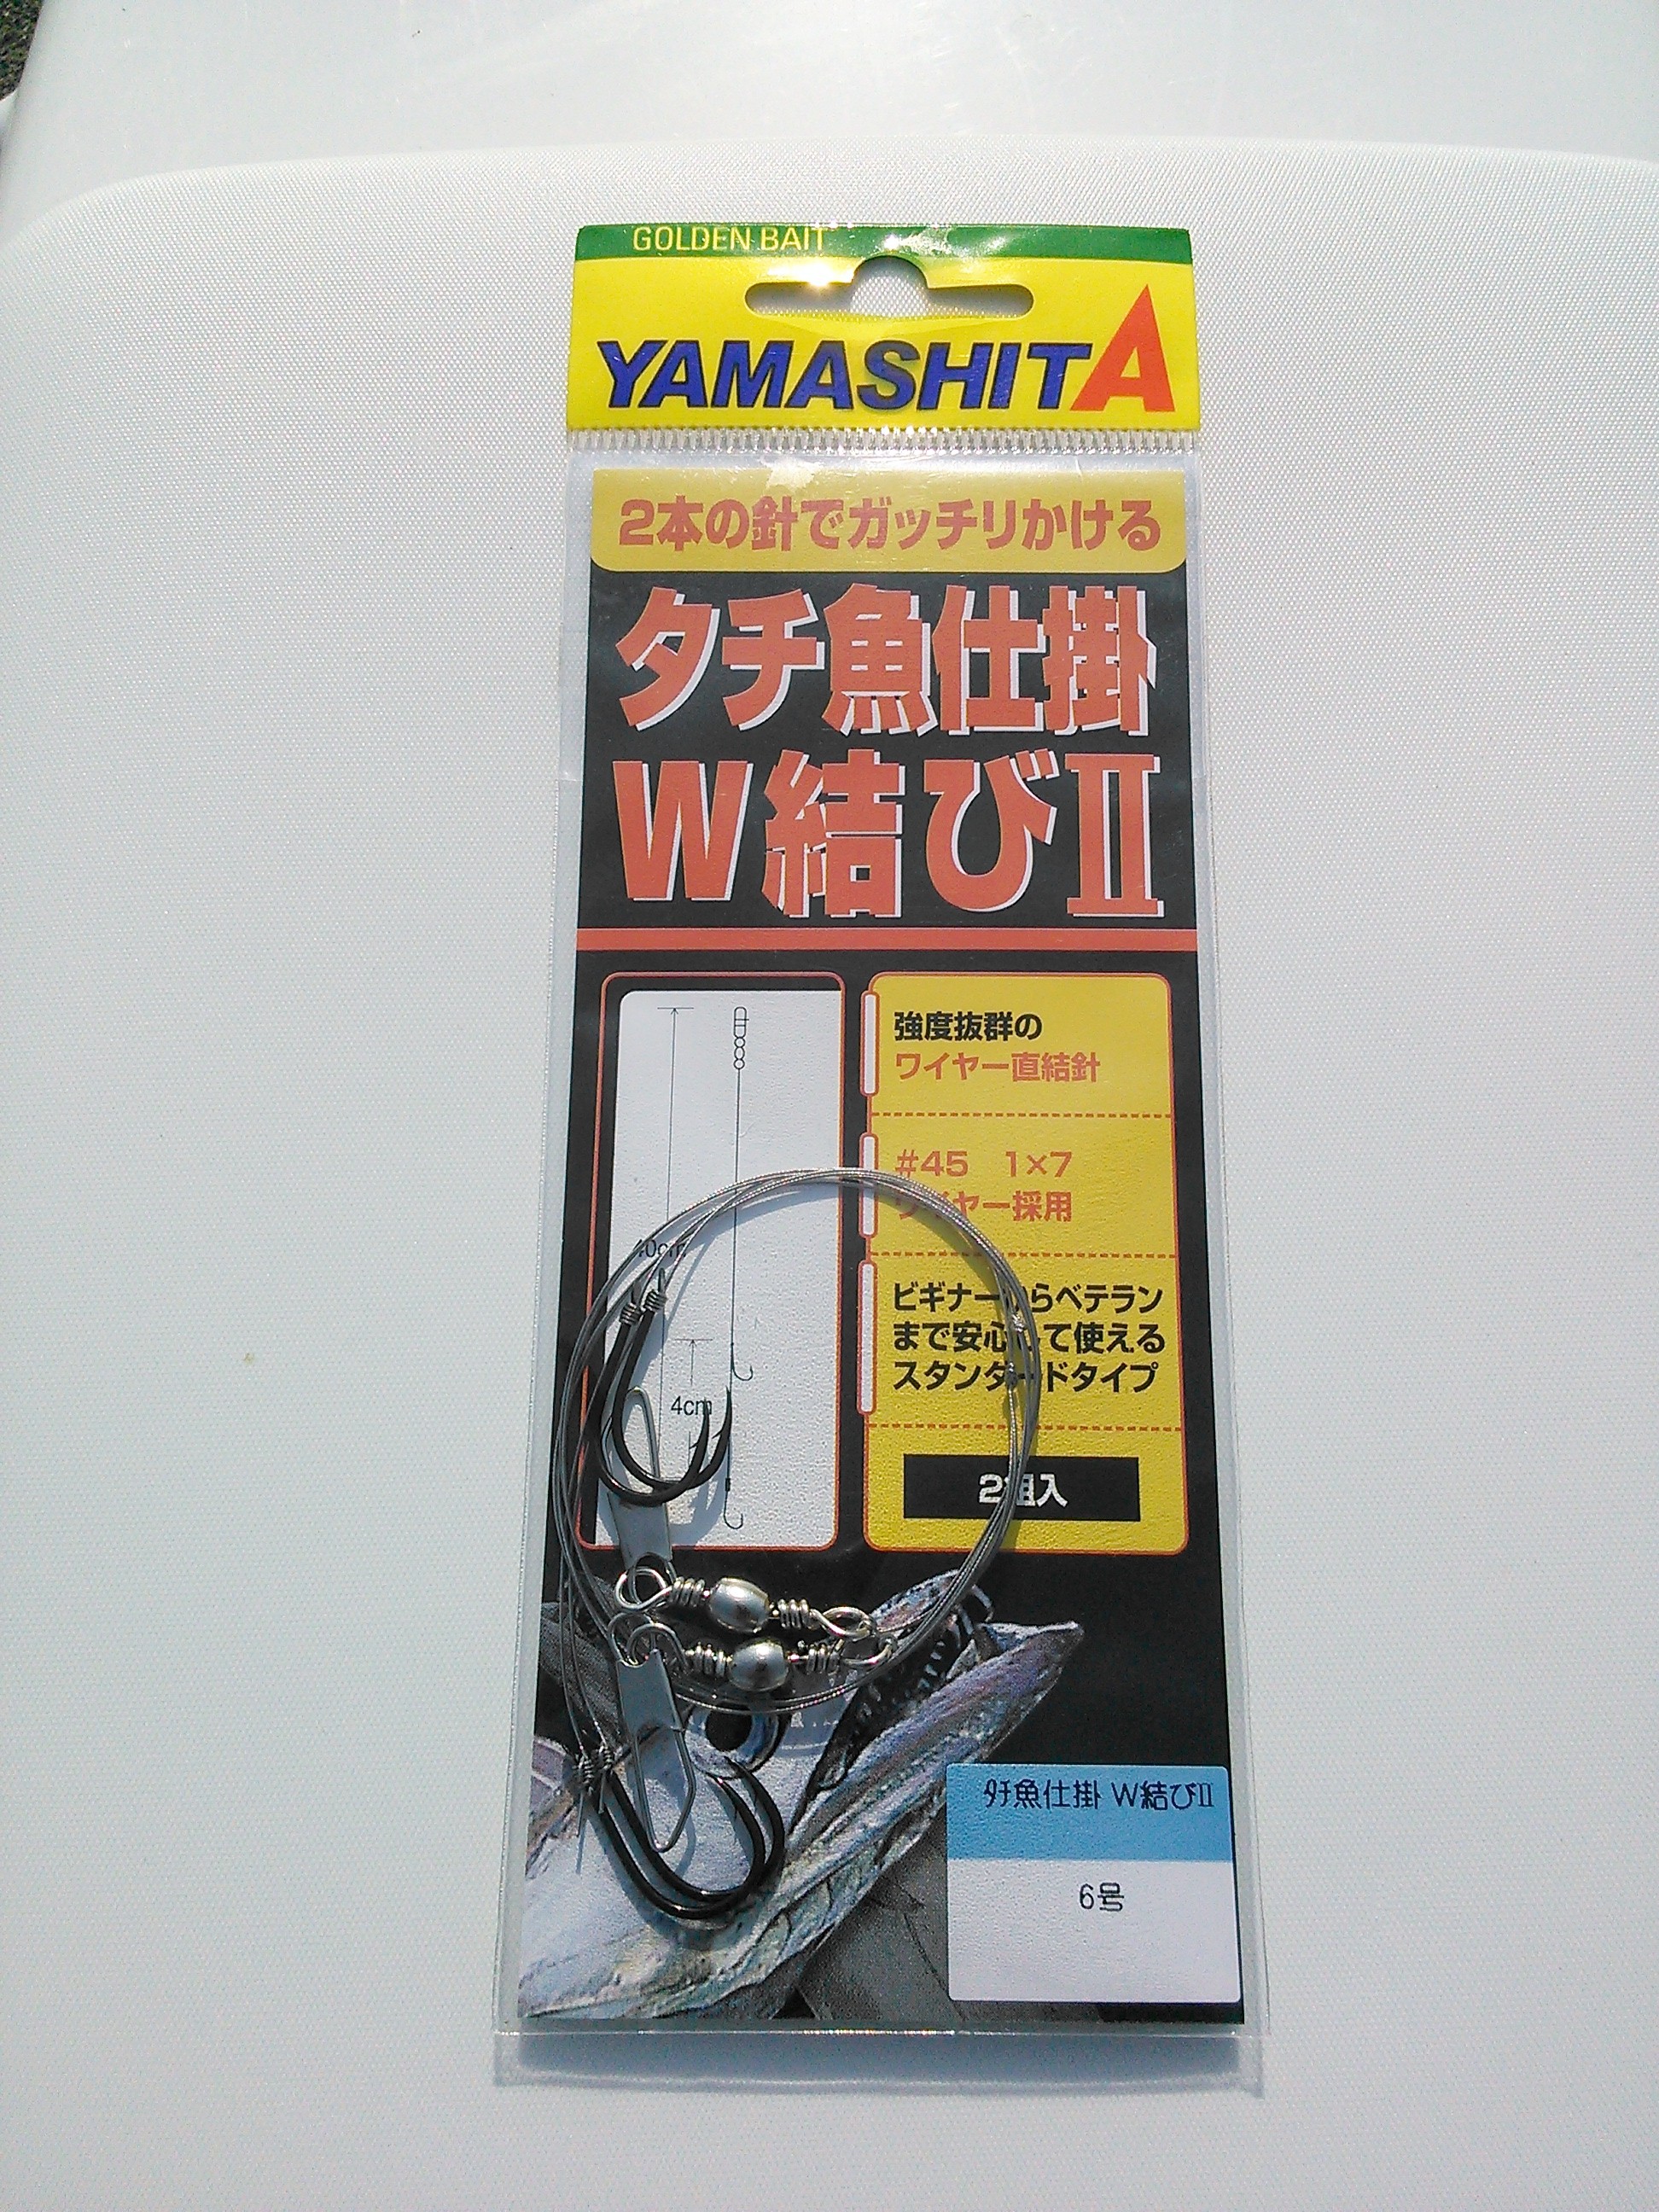 ヤマシタ「タチ魚仕掛W結びII」